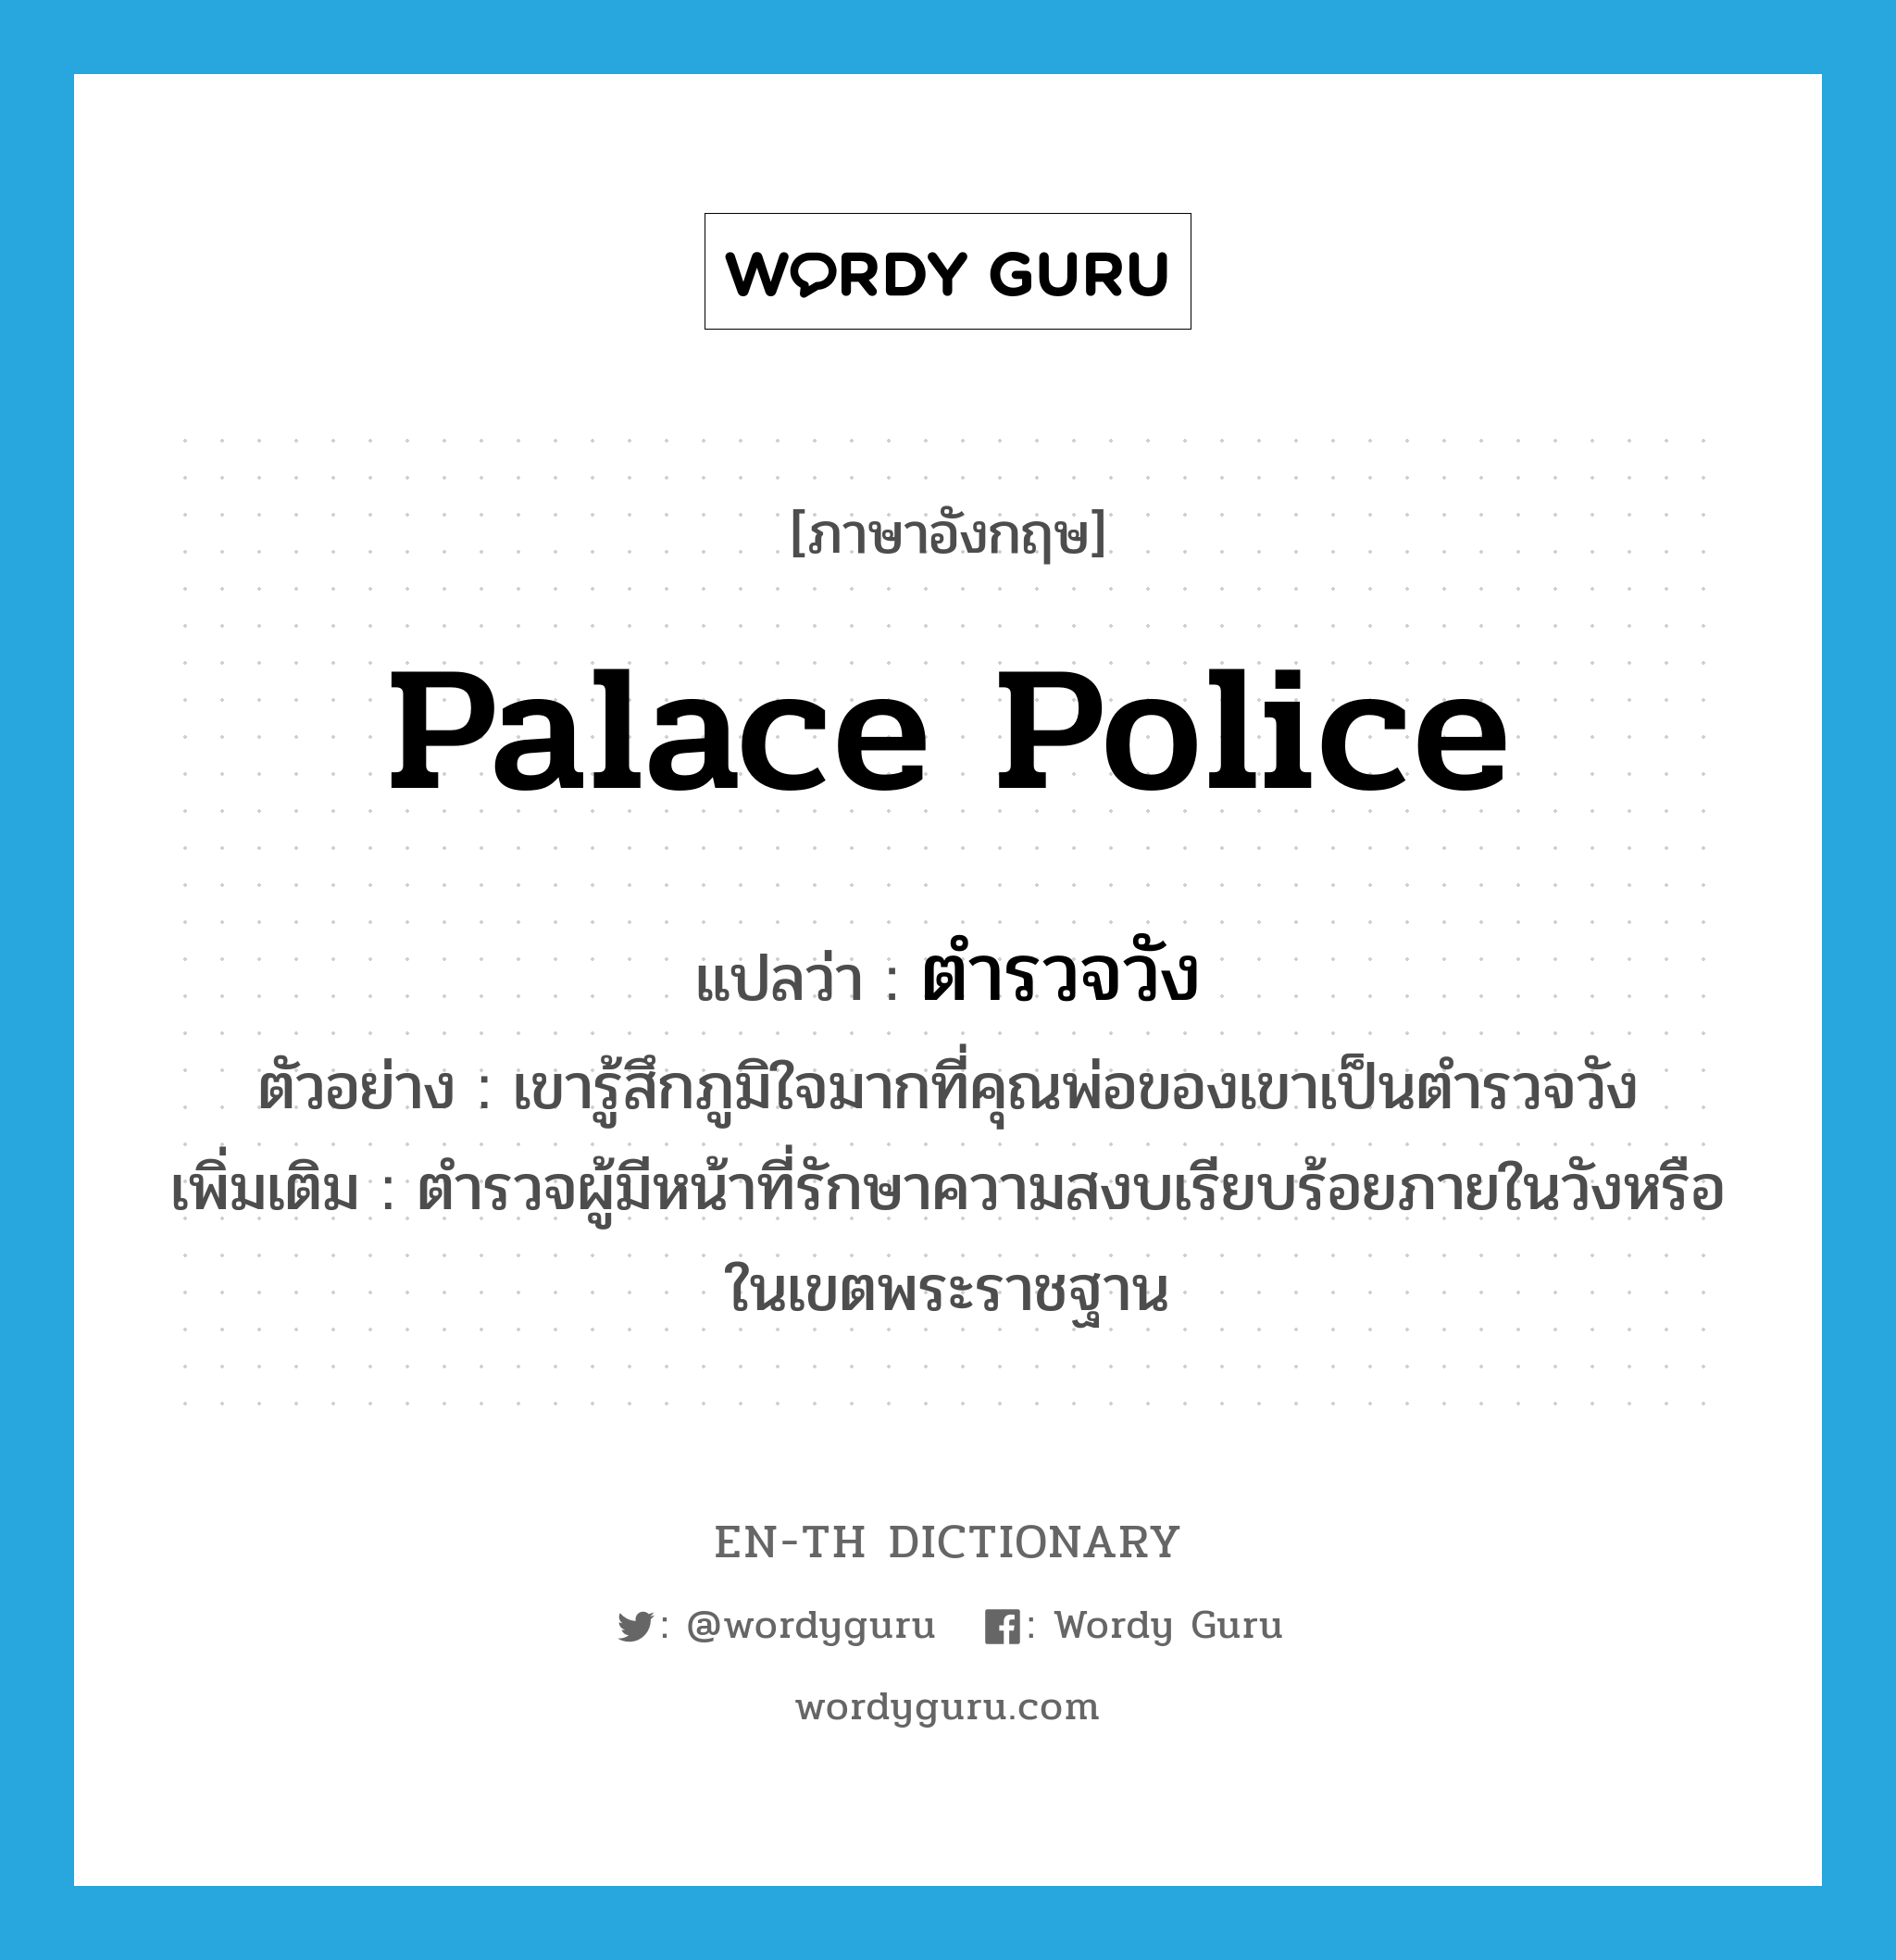 palace police แปลว่า?, คำศัพท์ภาษาอังกฤษ palace police แปลว่า ตำรวจวัง ประเภท N ตัวอย่าง เขารู้สึกภูมิใจมากที่คุณพ่อของเขาเป็นตำรวจวัง เพิ่มเติม ตำรวจผู้มีหน้าที่รักษาความสงบเรียบร้อยภายในวังหรือในเขตพระราชฐาน หมวด N